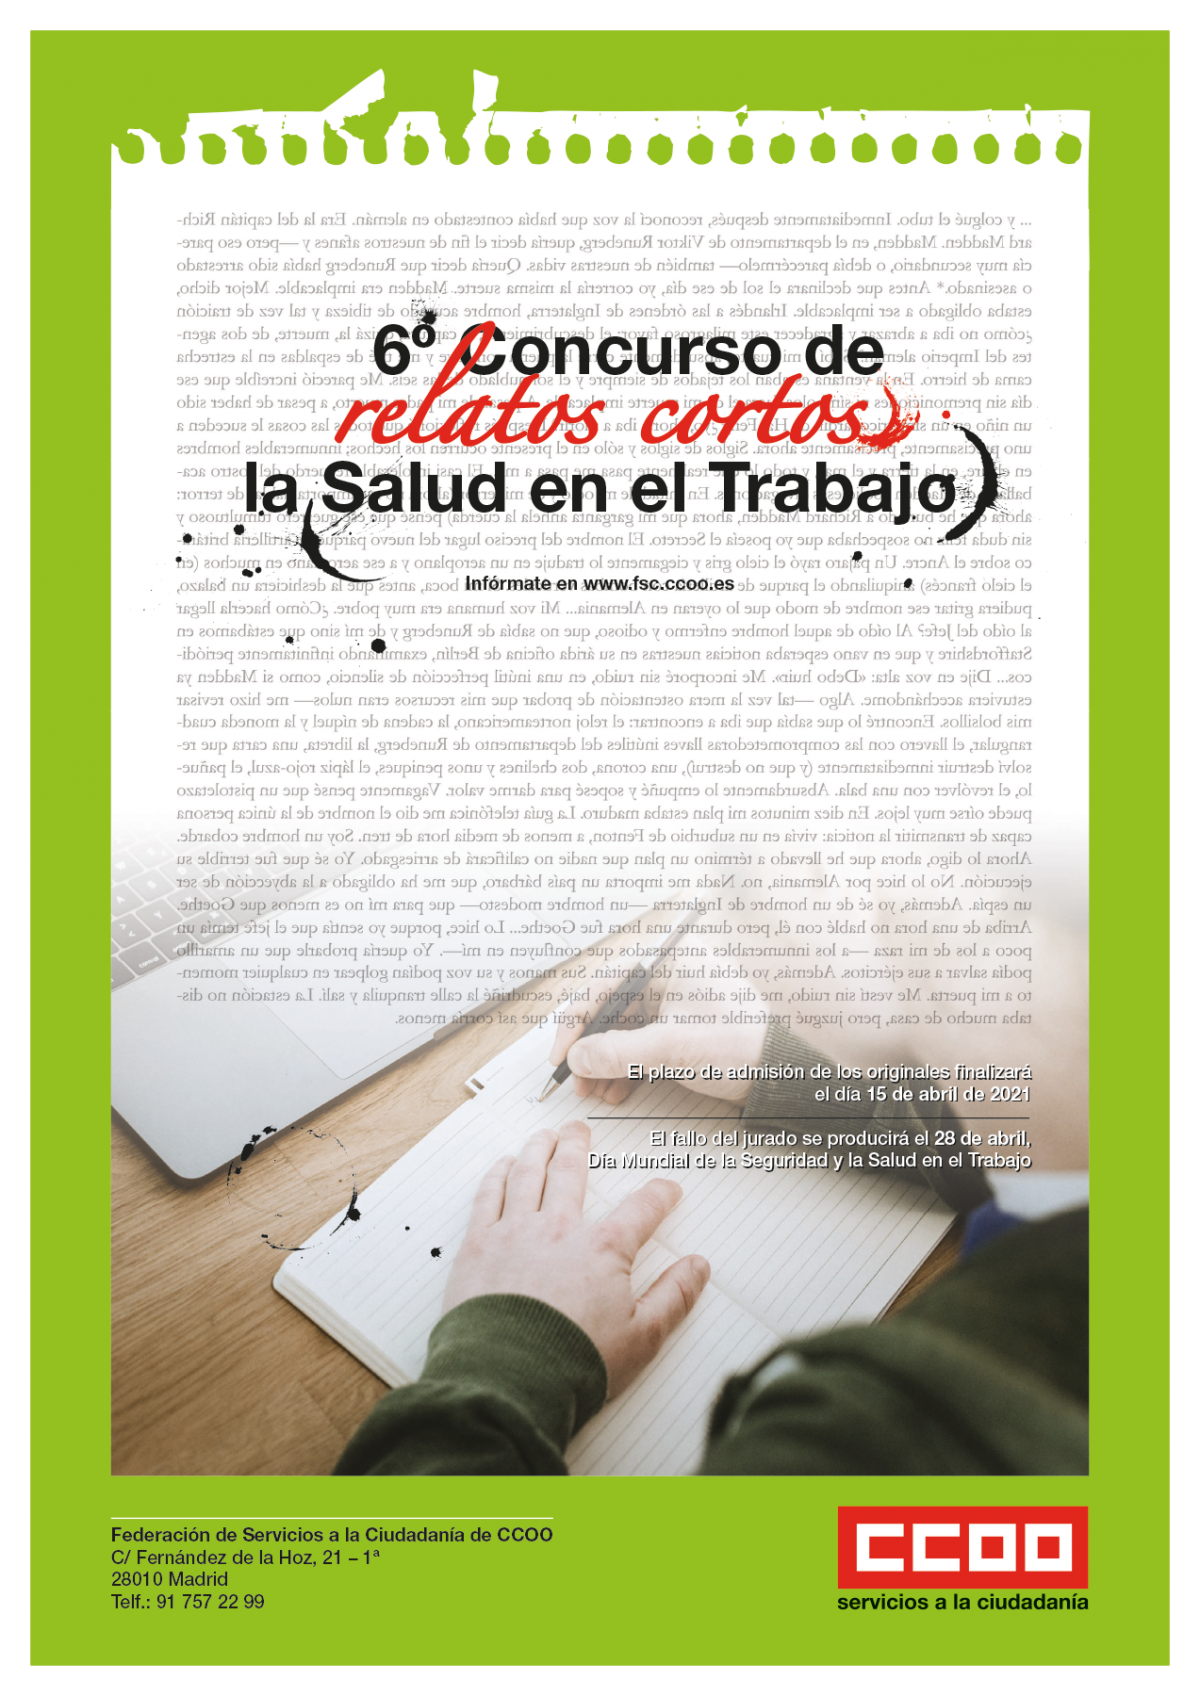 6º Concurso de relatos cortos "la Salud en el Trabajo", cartel